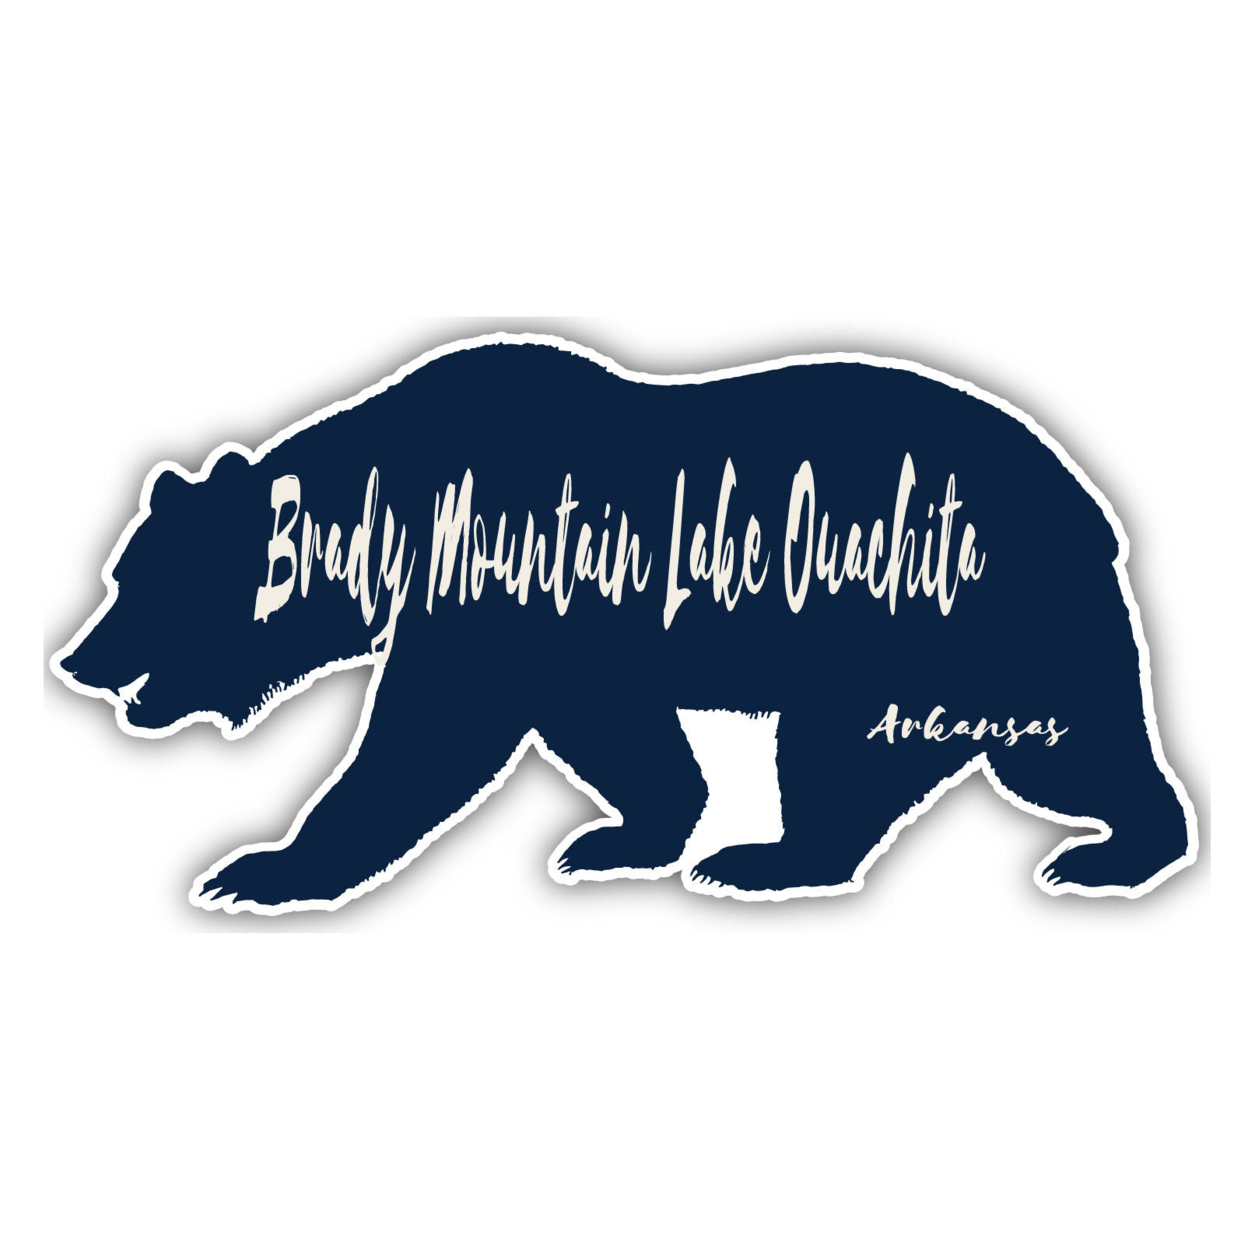 Brady Mountain Lake Ouachita Arkansas Souvenir Decorative Stickers (Choose Theme And Size) - 4-Pack, 8-Inch, Bear